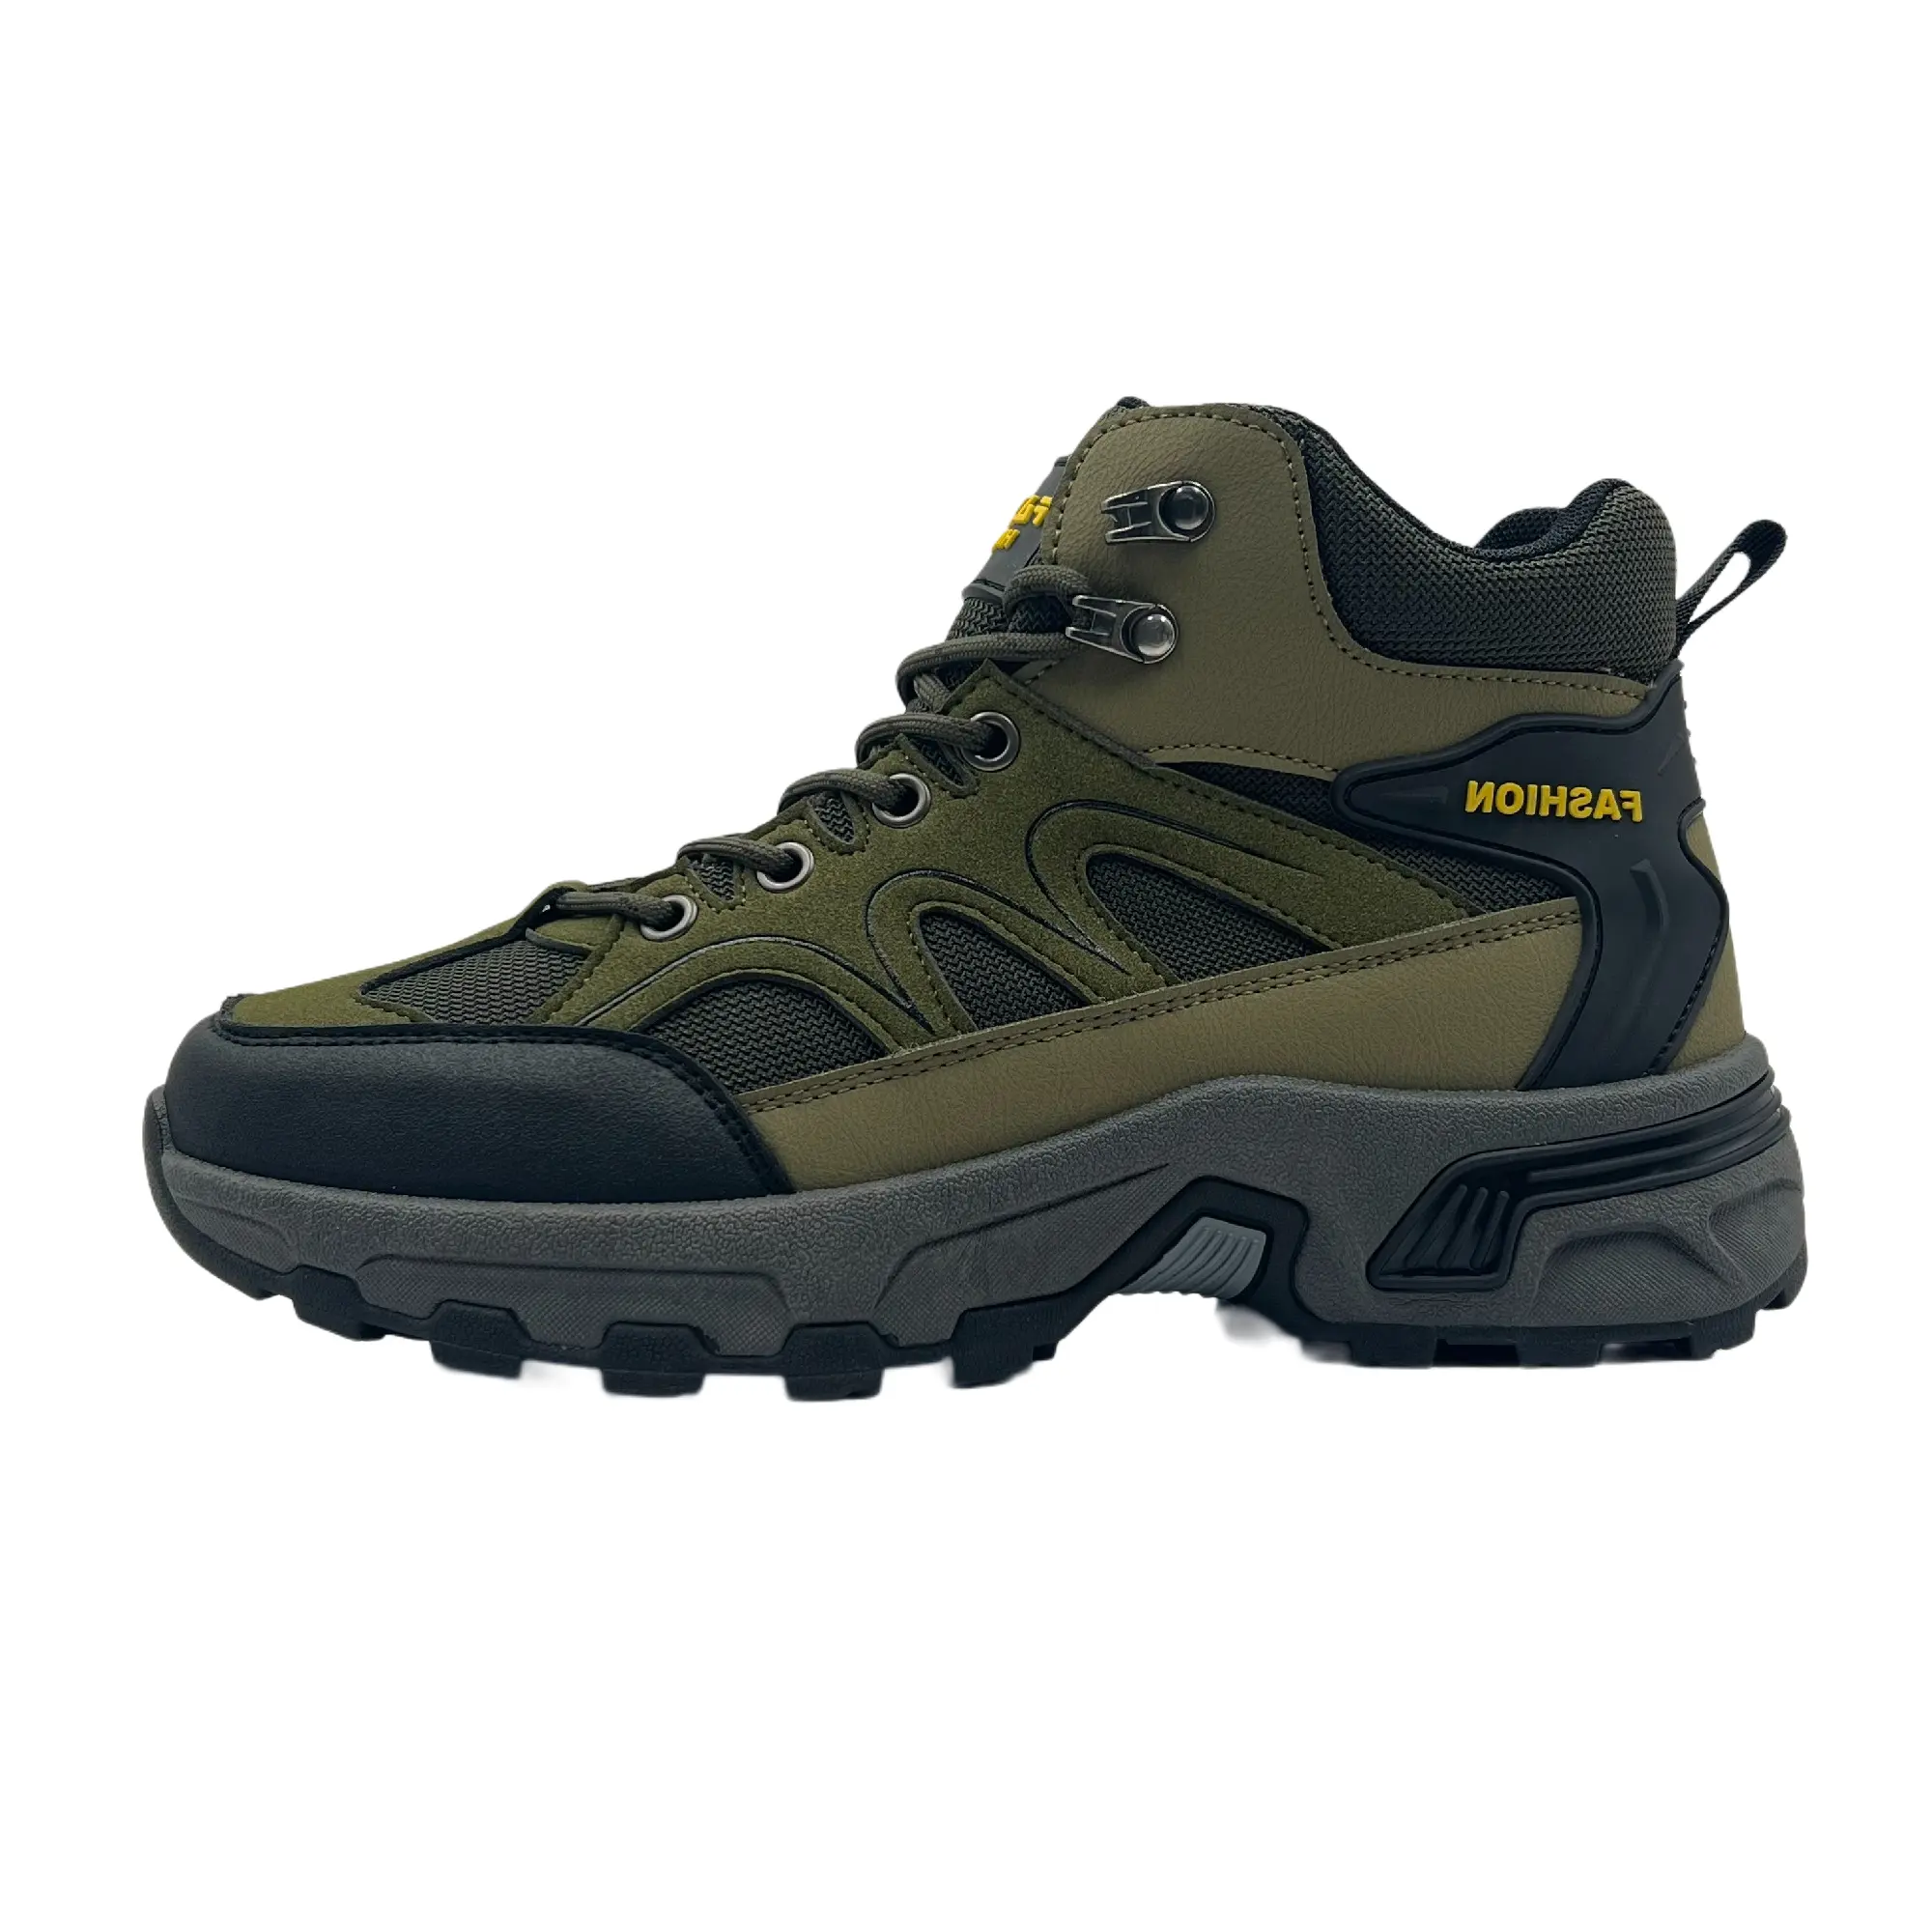 Prodotto di tendenza scarpe da trekking uomo stivali da esterno impermeabili inverno alta montagna Sneakers da caccia stivali da uomo